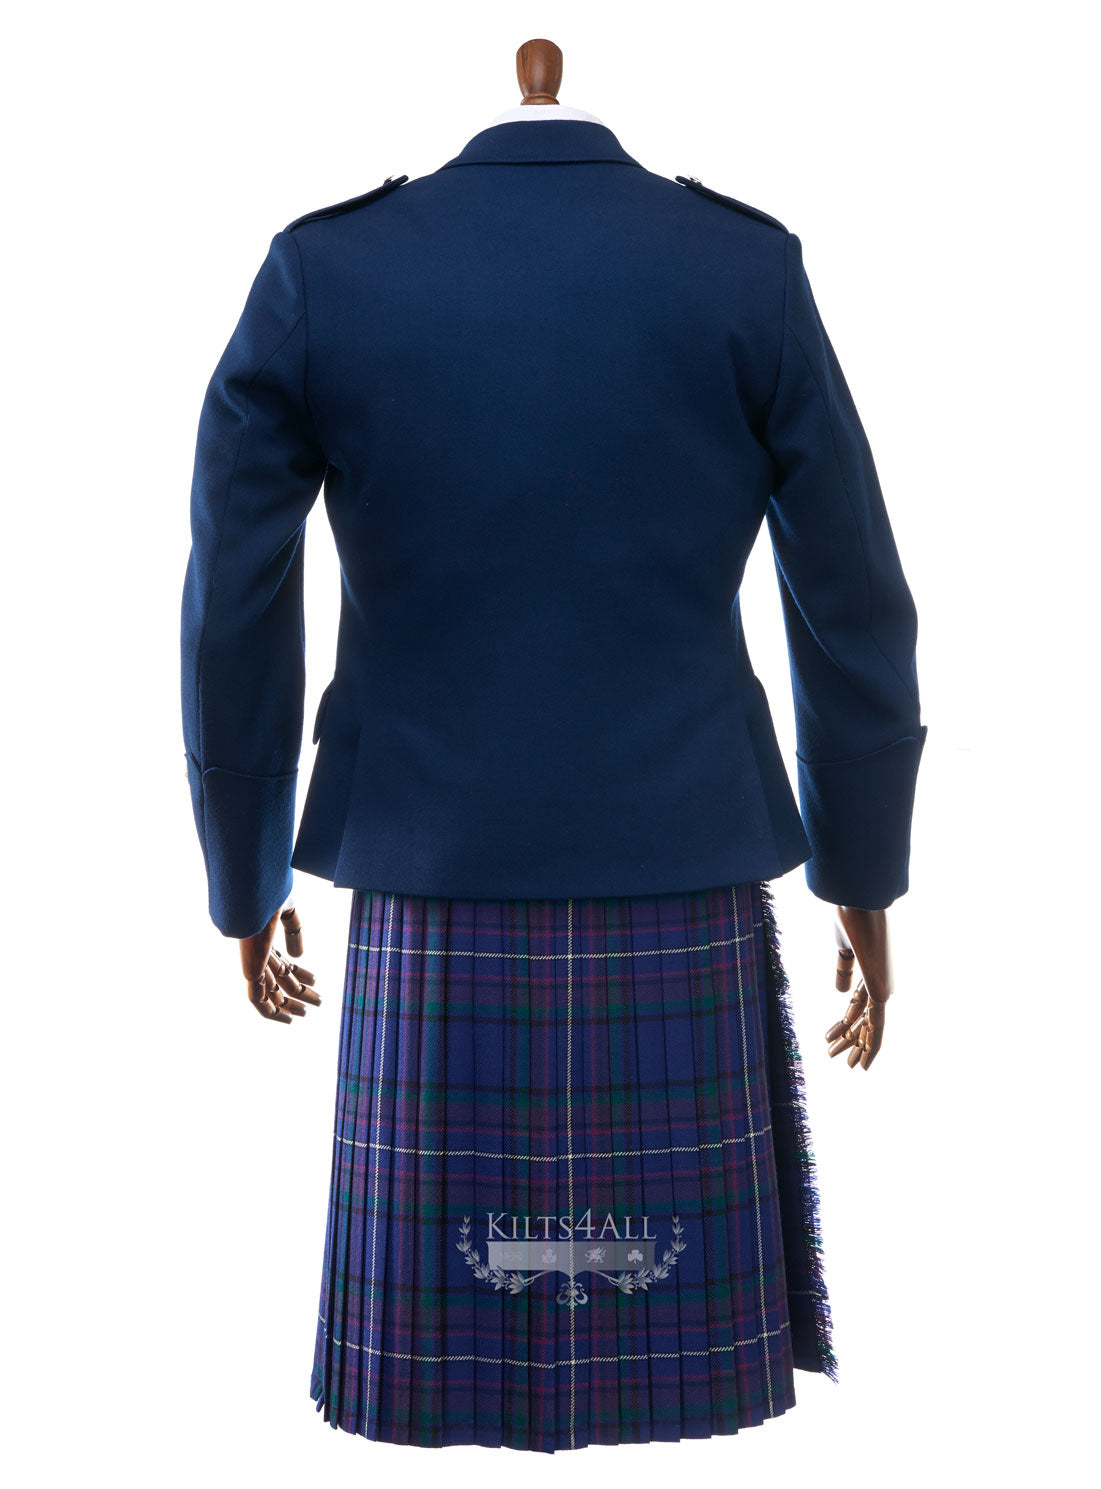 Mens Contemporary Blue Argyll Jacket & Waistcoat to Buy